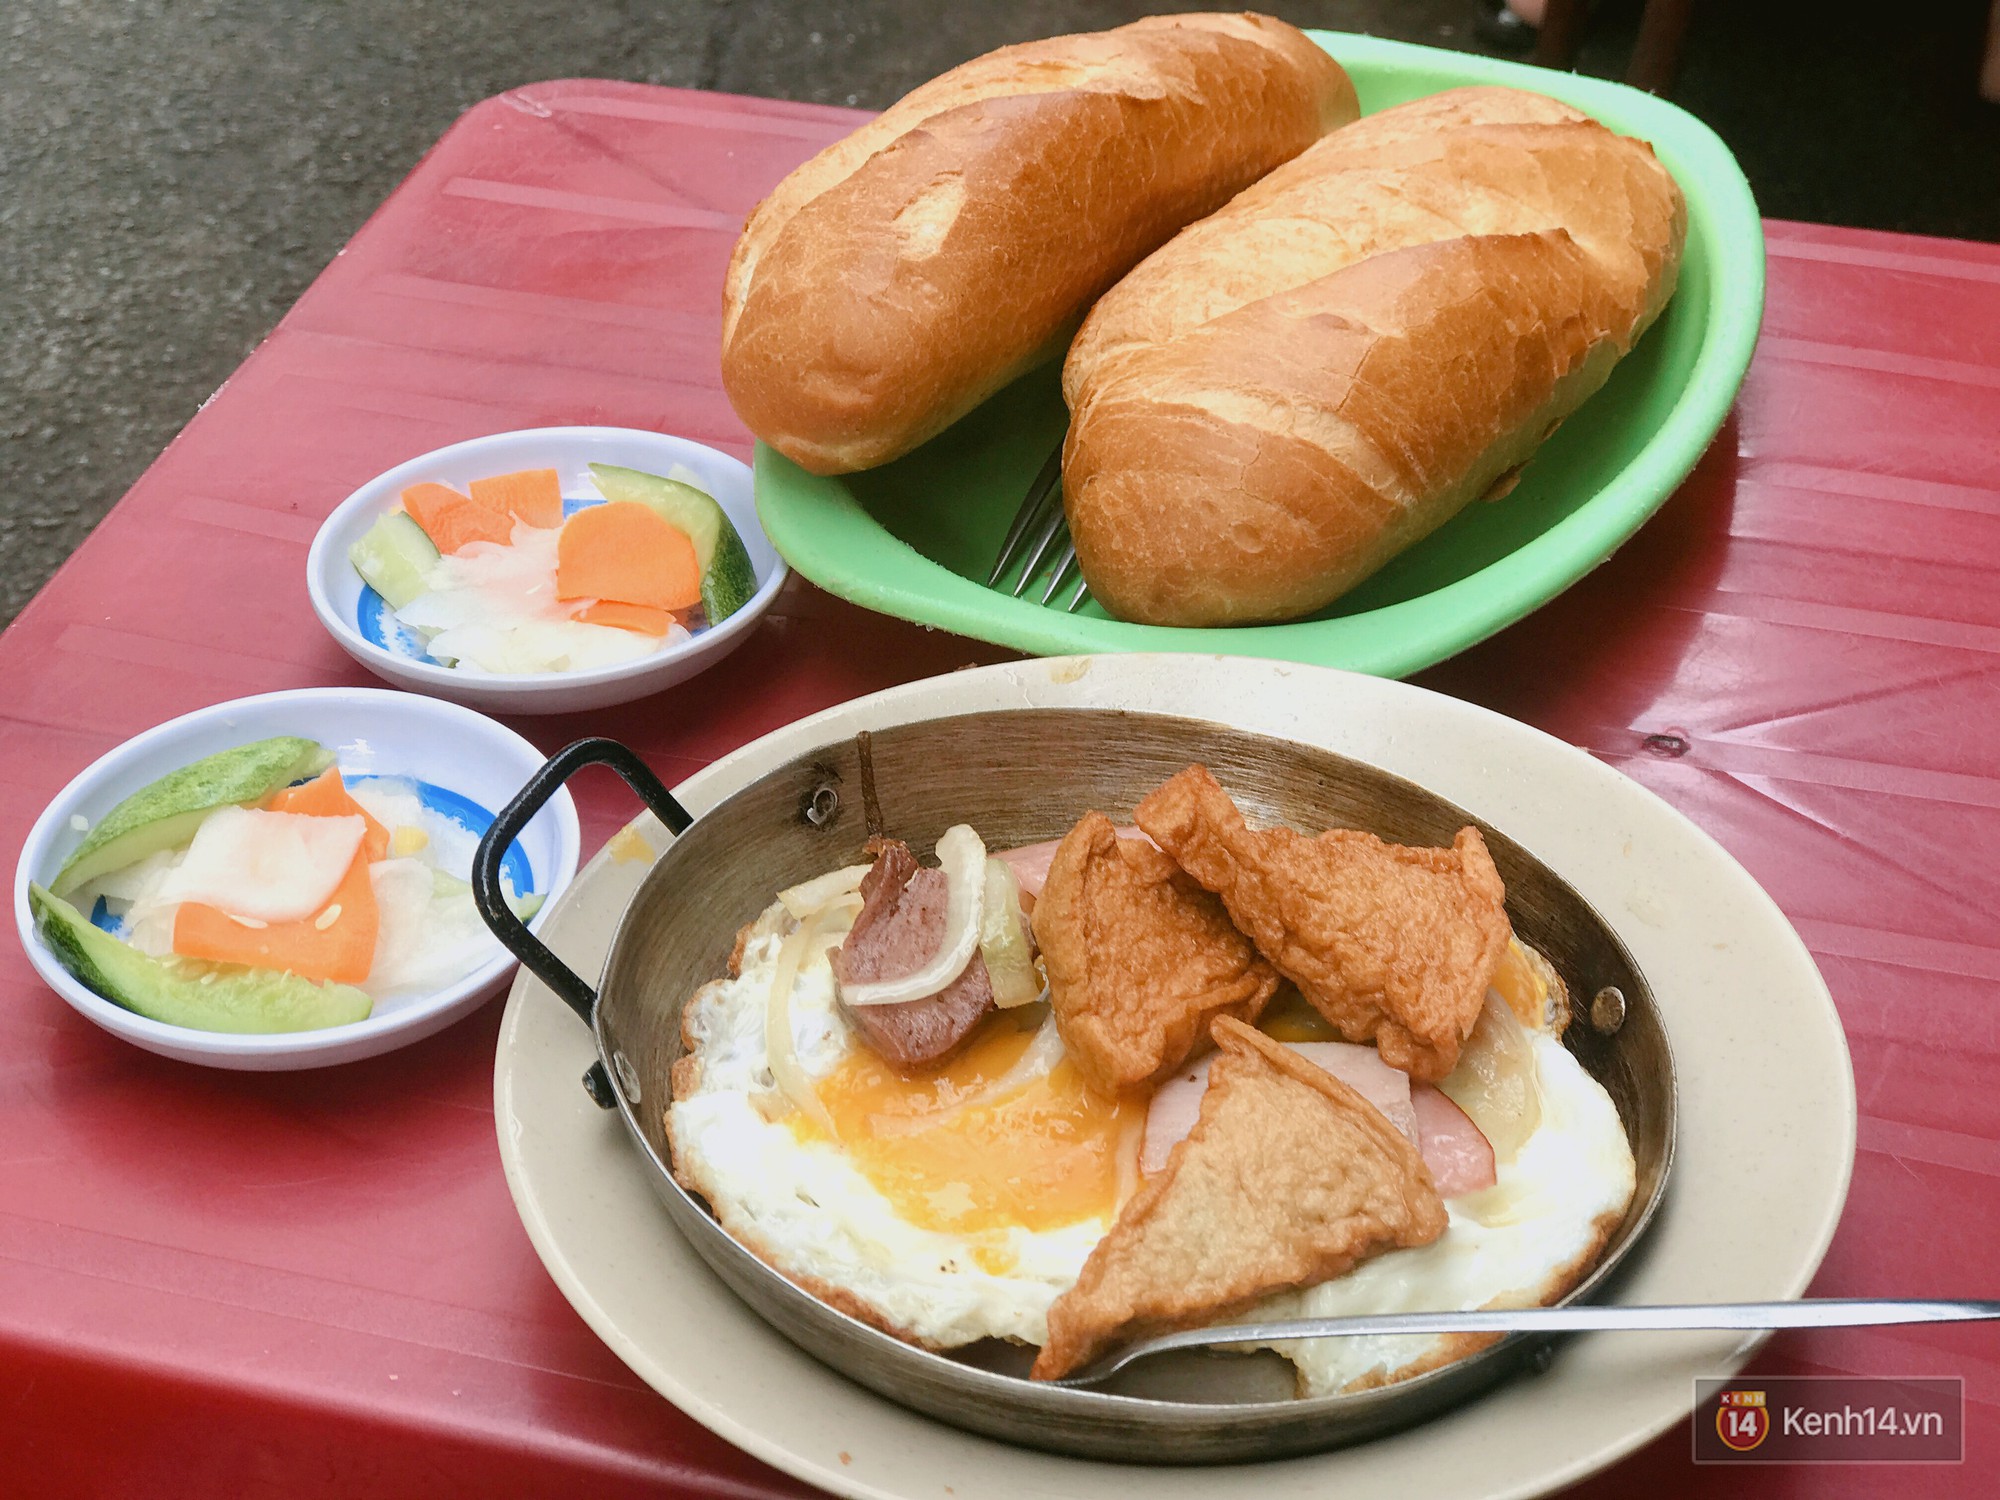 Lưu ngay những quán bánh mì chảo để bạn thưởng thức bữa sáng mộc mạc đậm chất Sài Gòn - Ảnh 1.